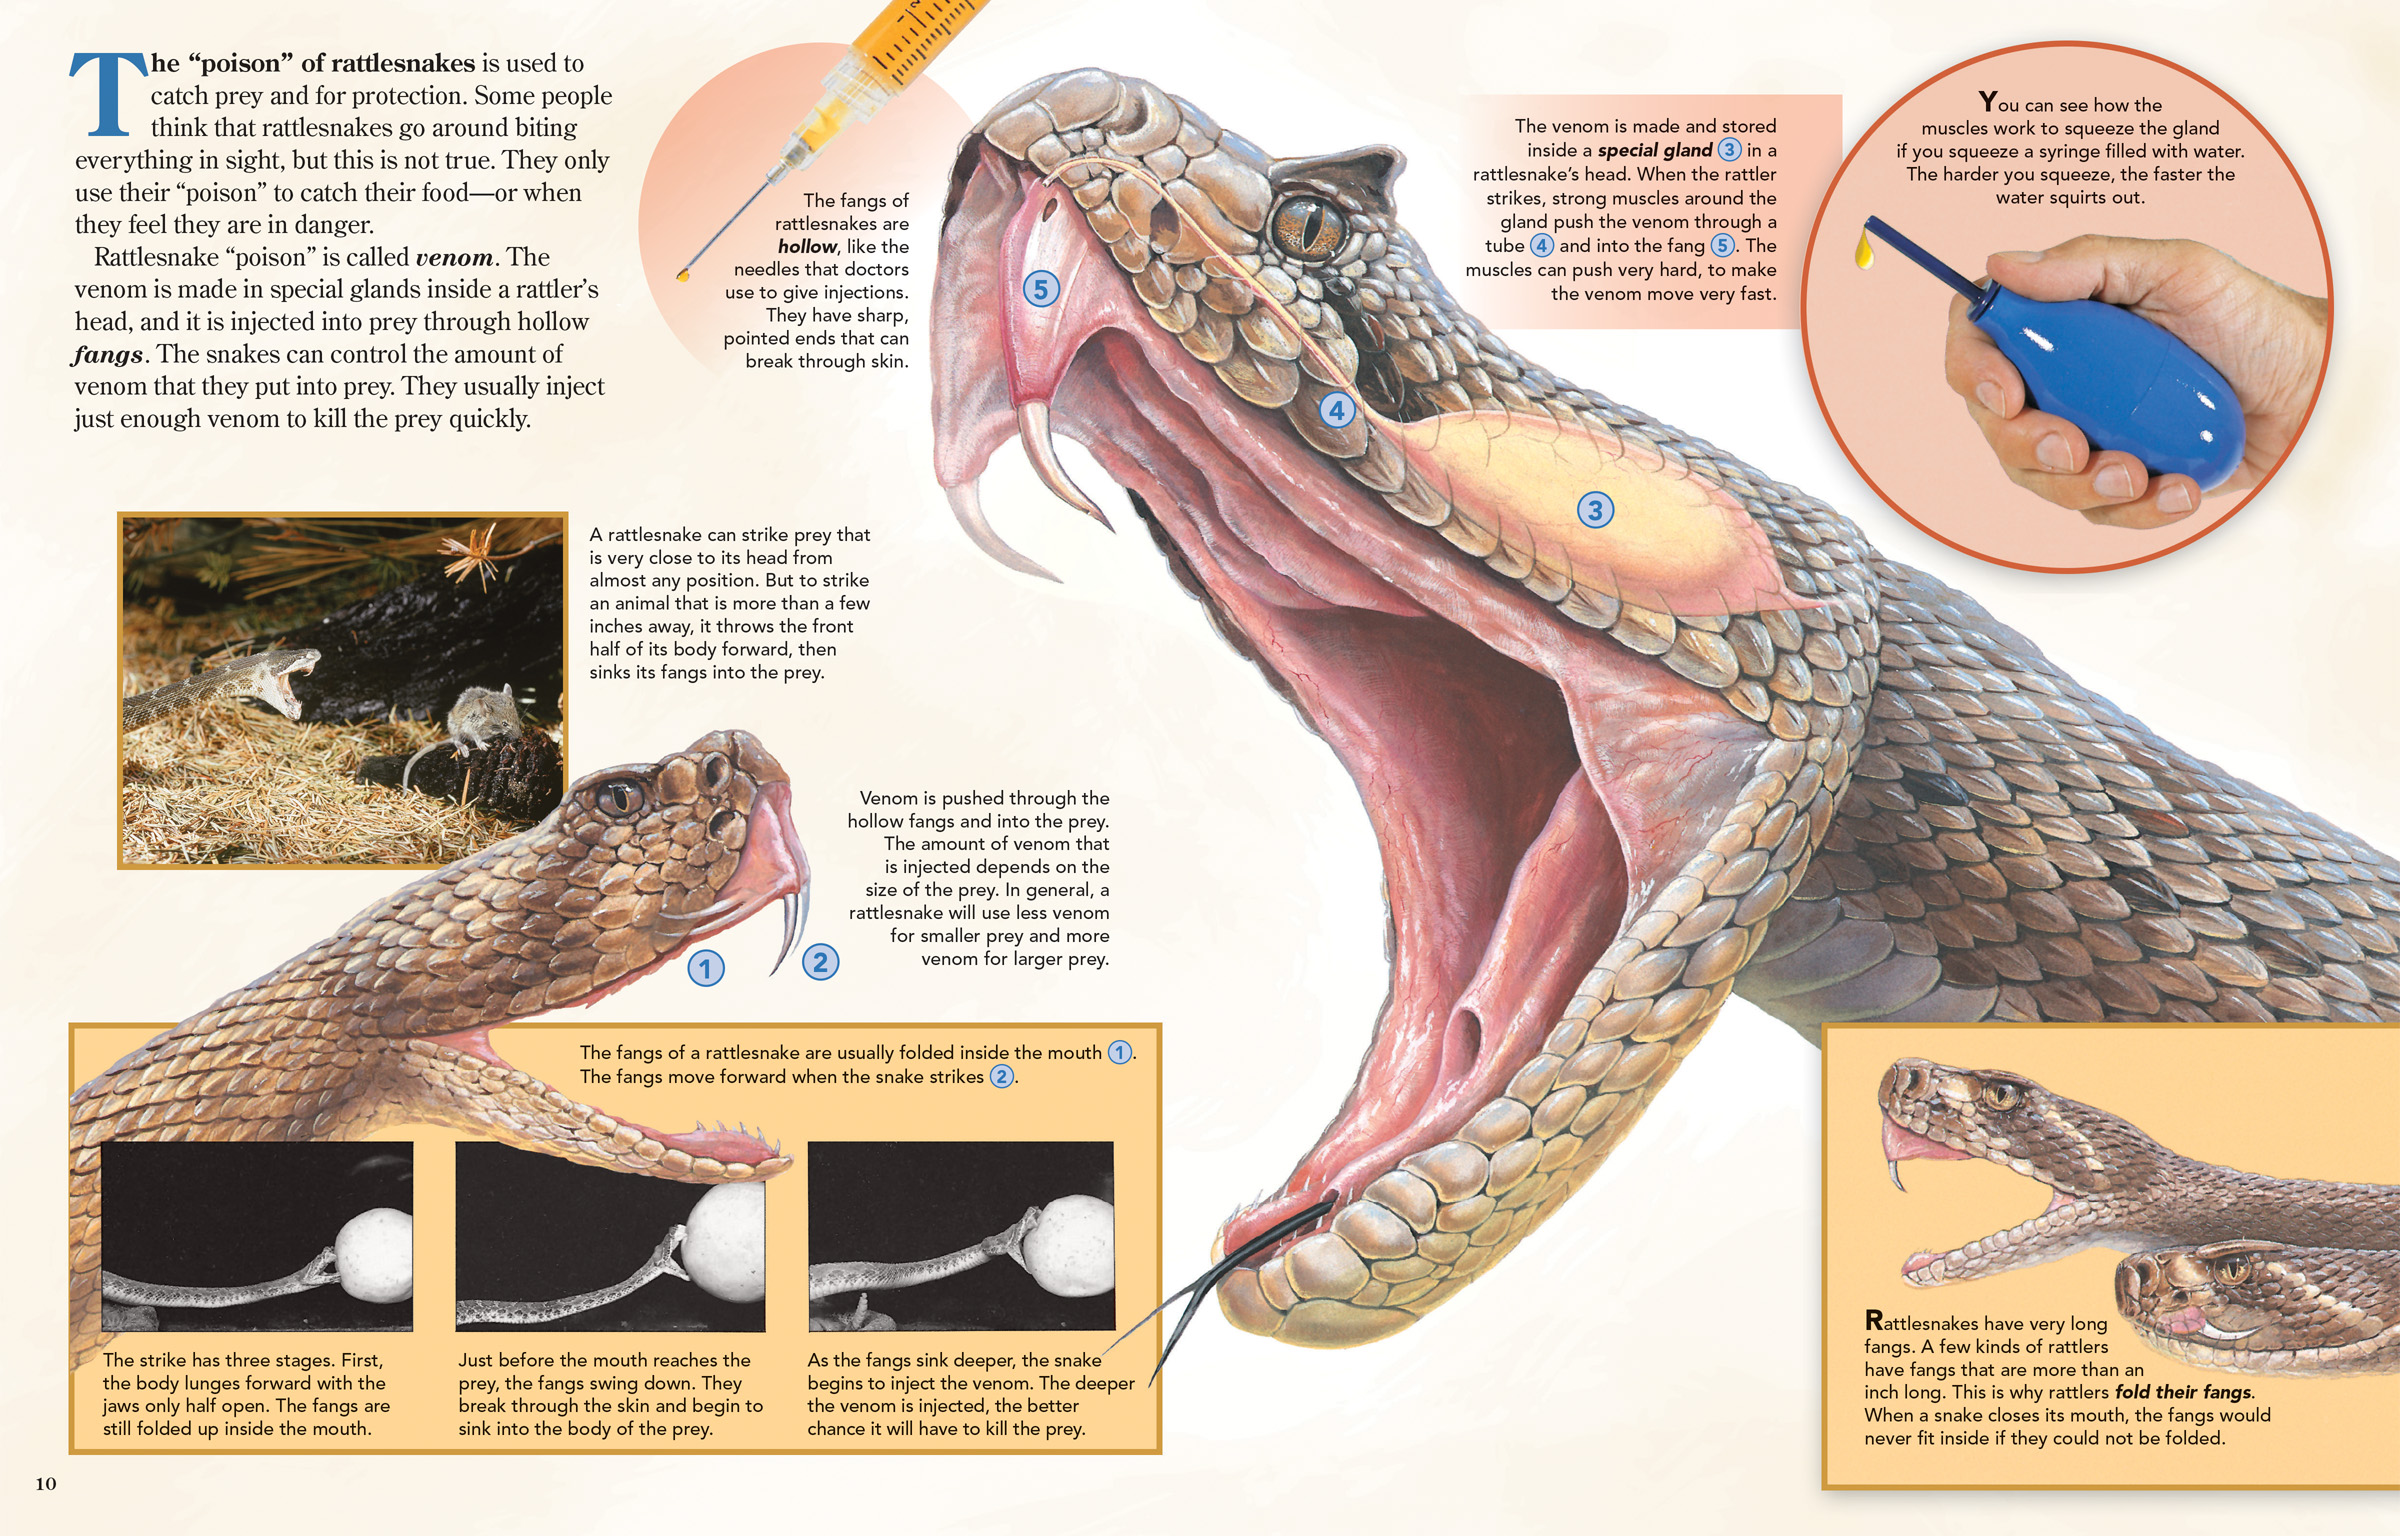 How Do Rattlesnakes Kill Their Prey?